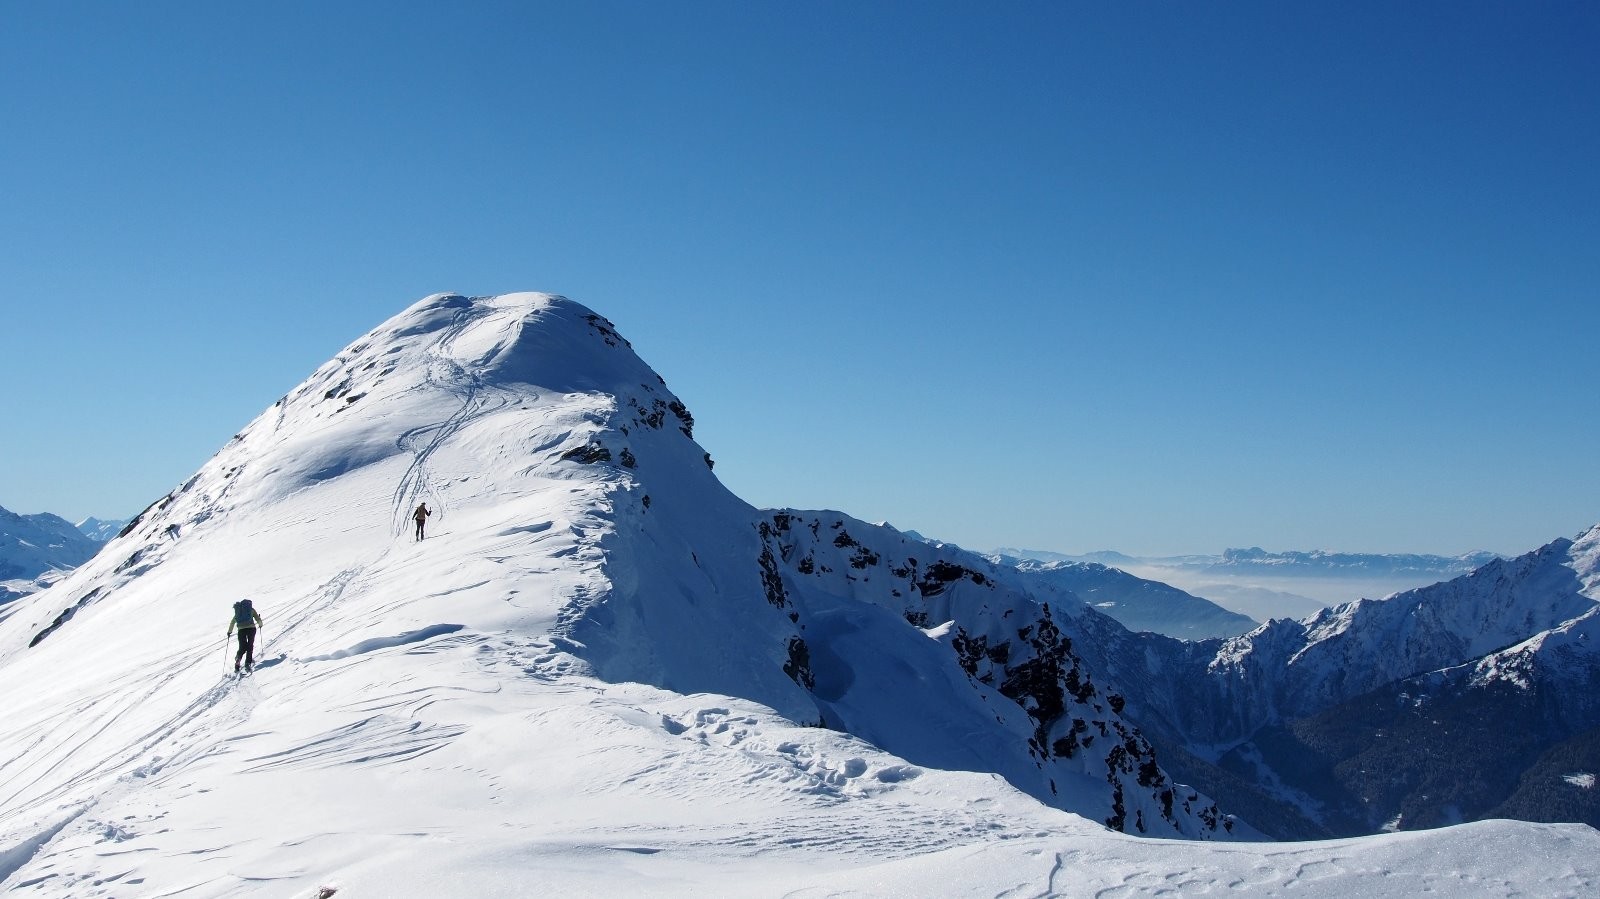 Bizard n'étant pas très skiable, nous optons pour le sommet 2448 m sur l'arête de la Tournette.